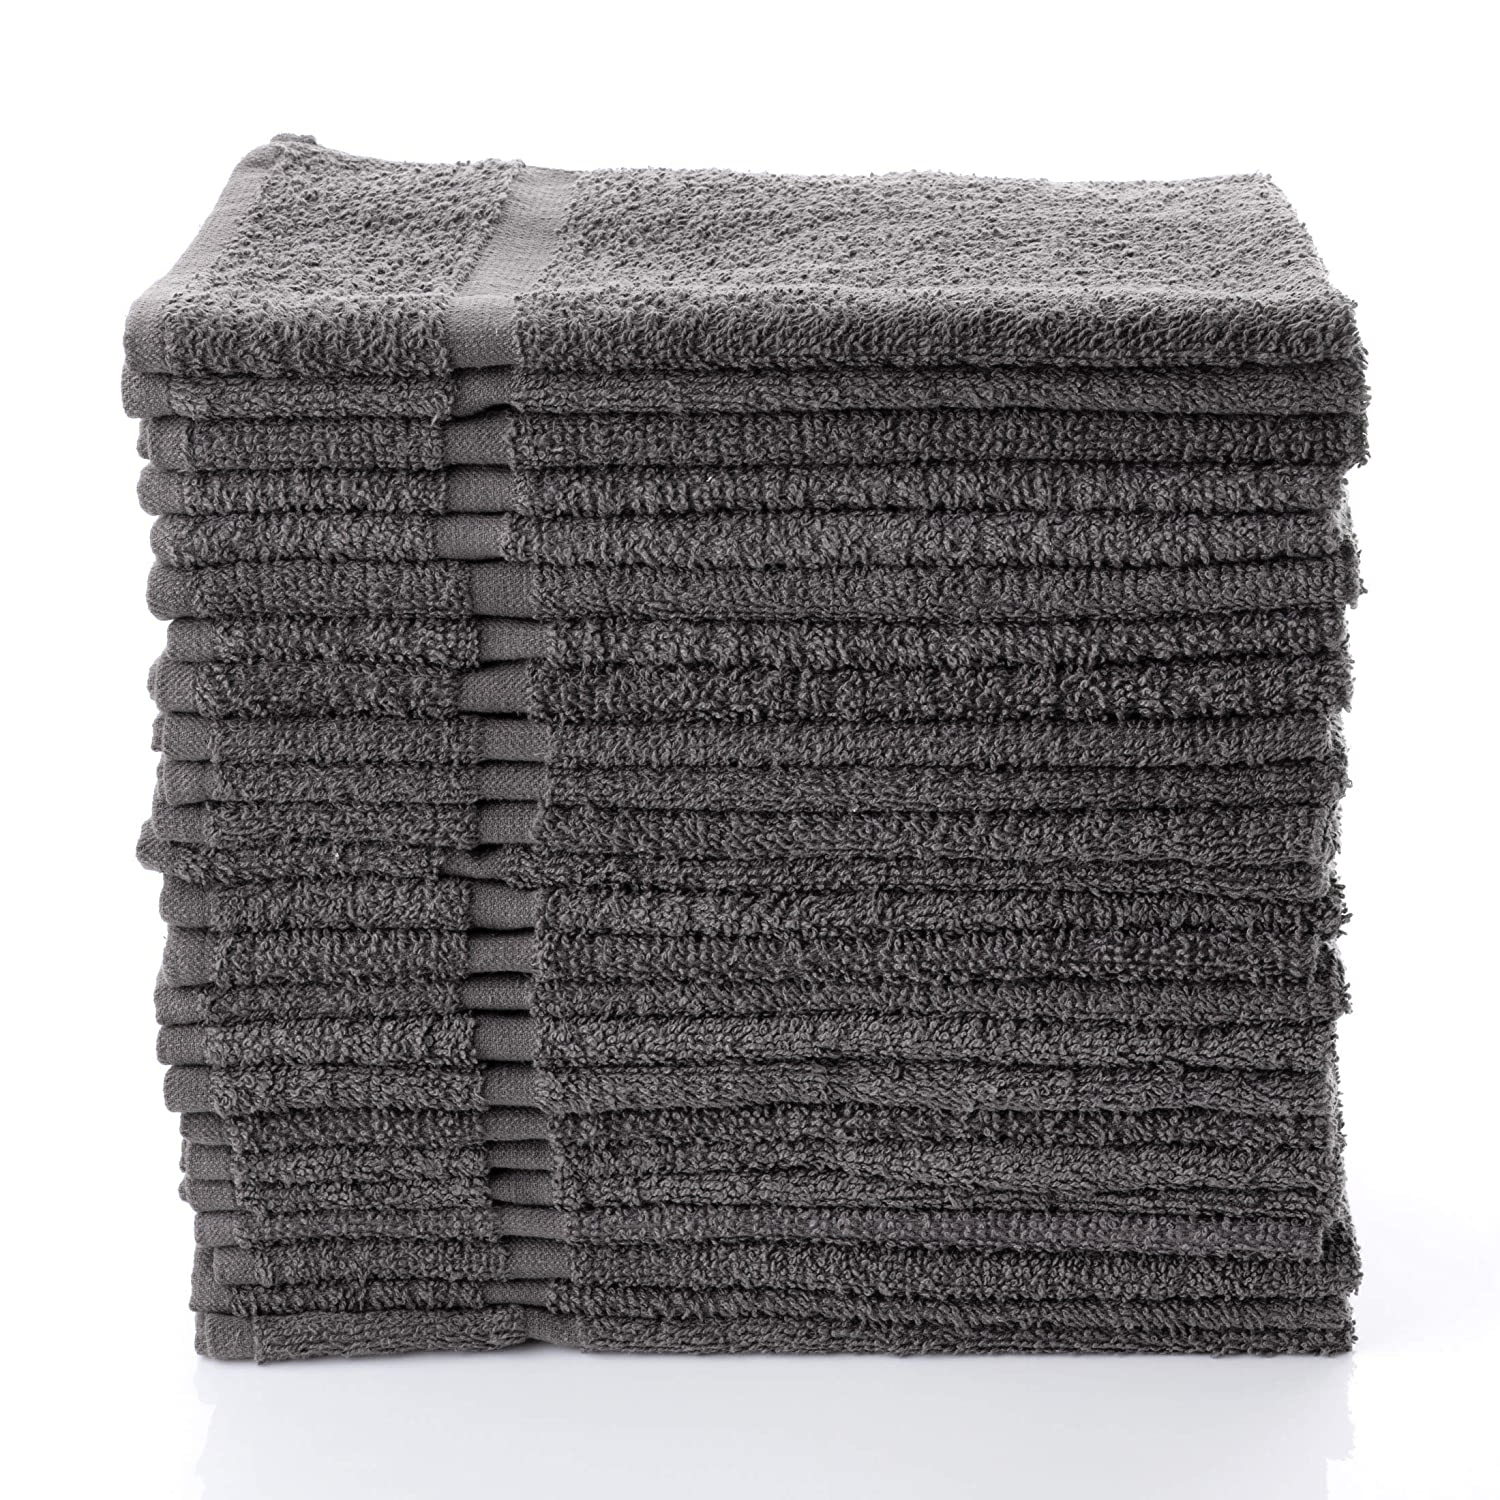 16 x 27 Charcoal Gray Salon Towels Bleach Resistant 100% Cotton